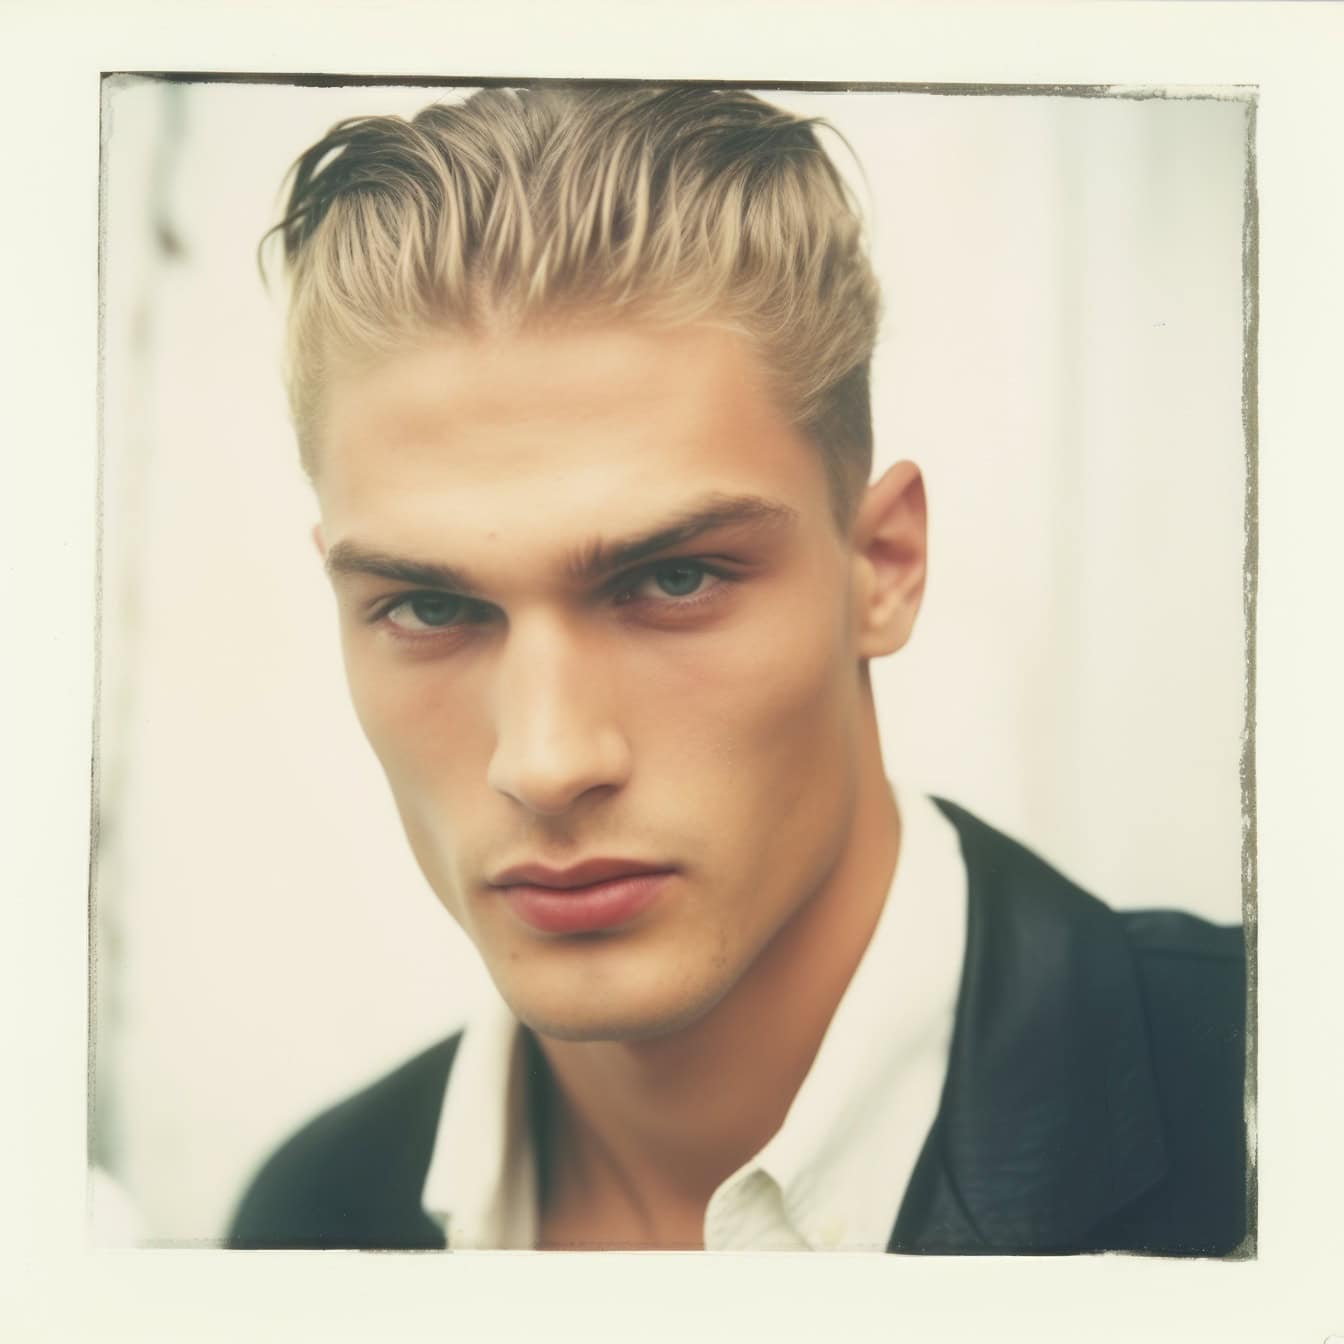 Altes, verblasstes Polaroid-Foto eines sehr gutaussehenden Mannes Fotomodell mit blonden Haaren